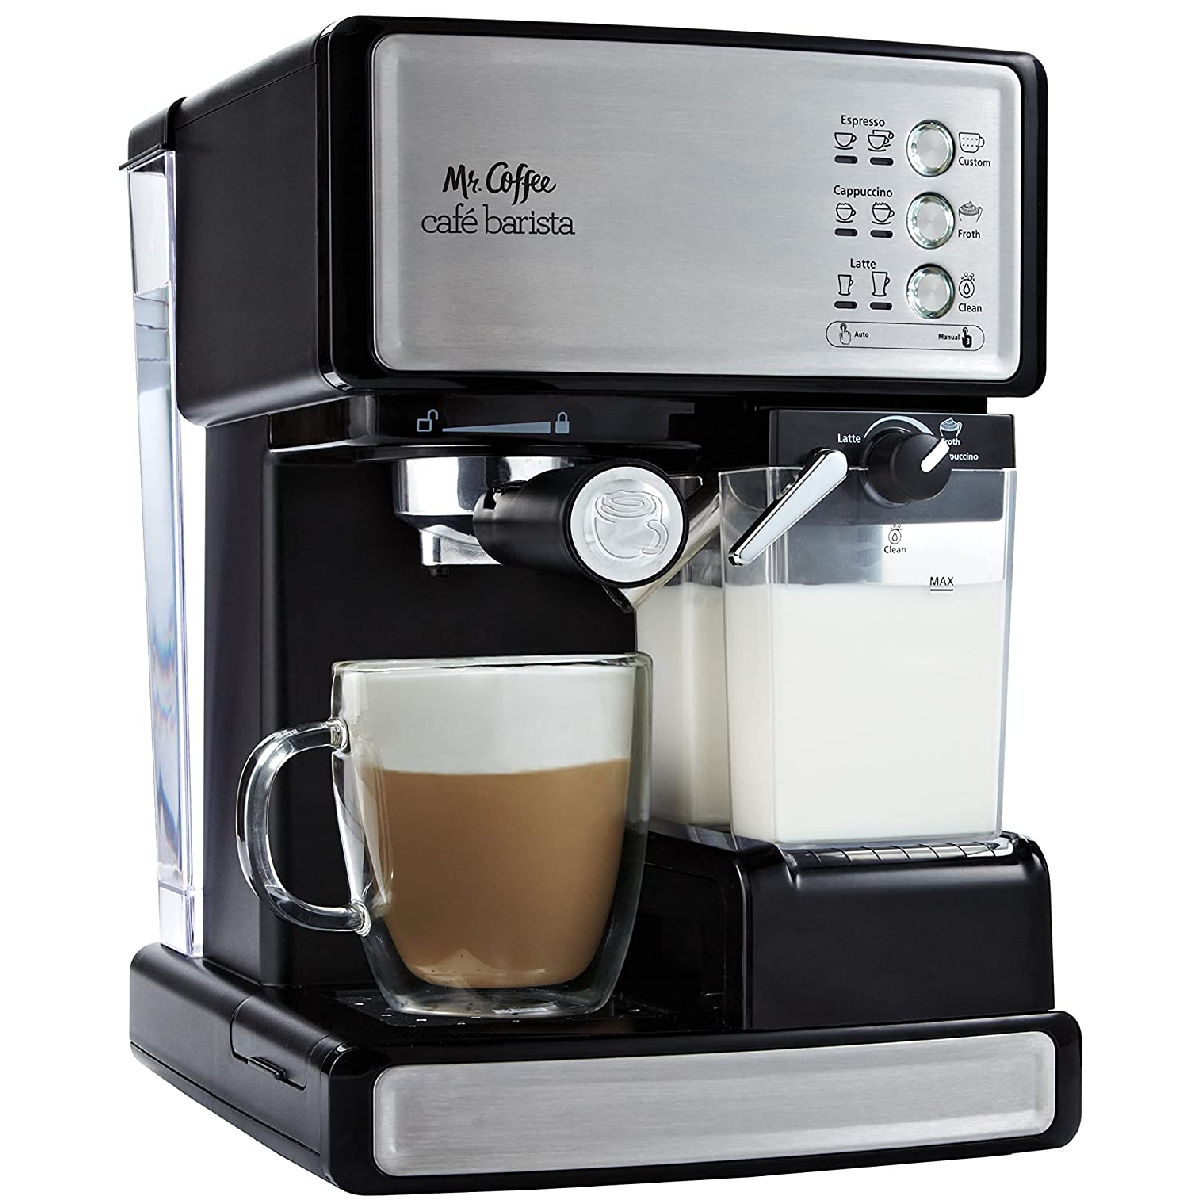 Mr. Coffee Semi-Automatic Espresso and Cappuccino Maker